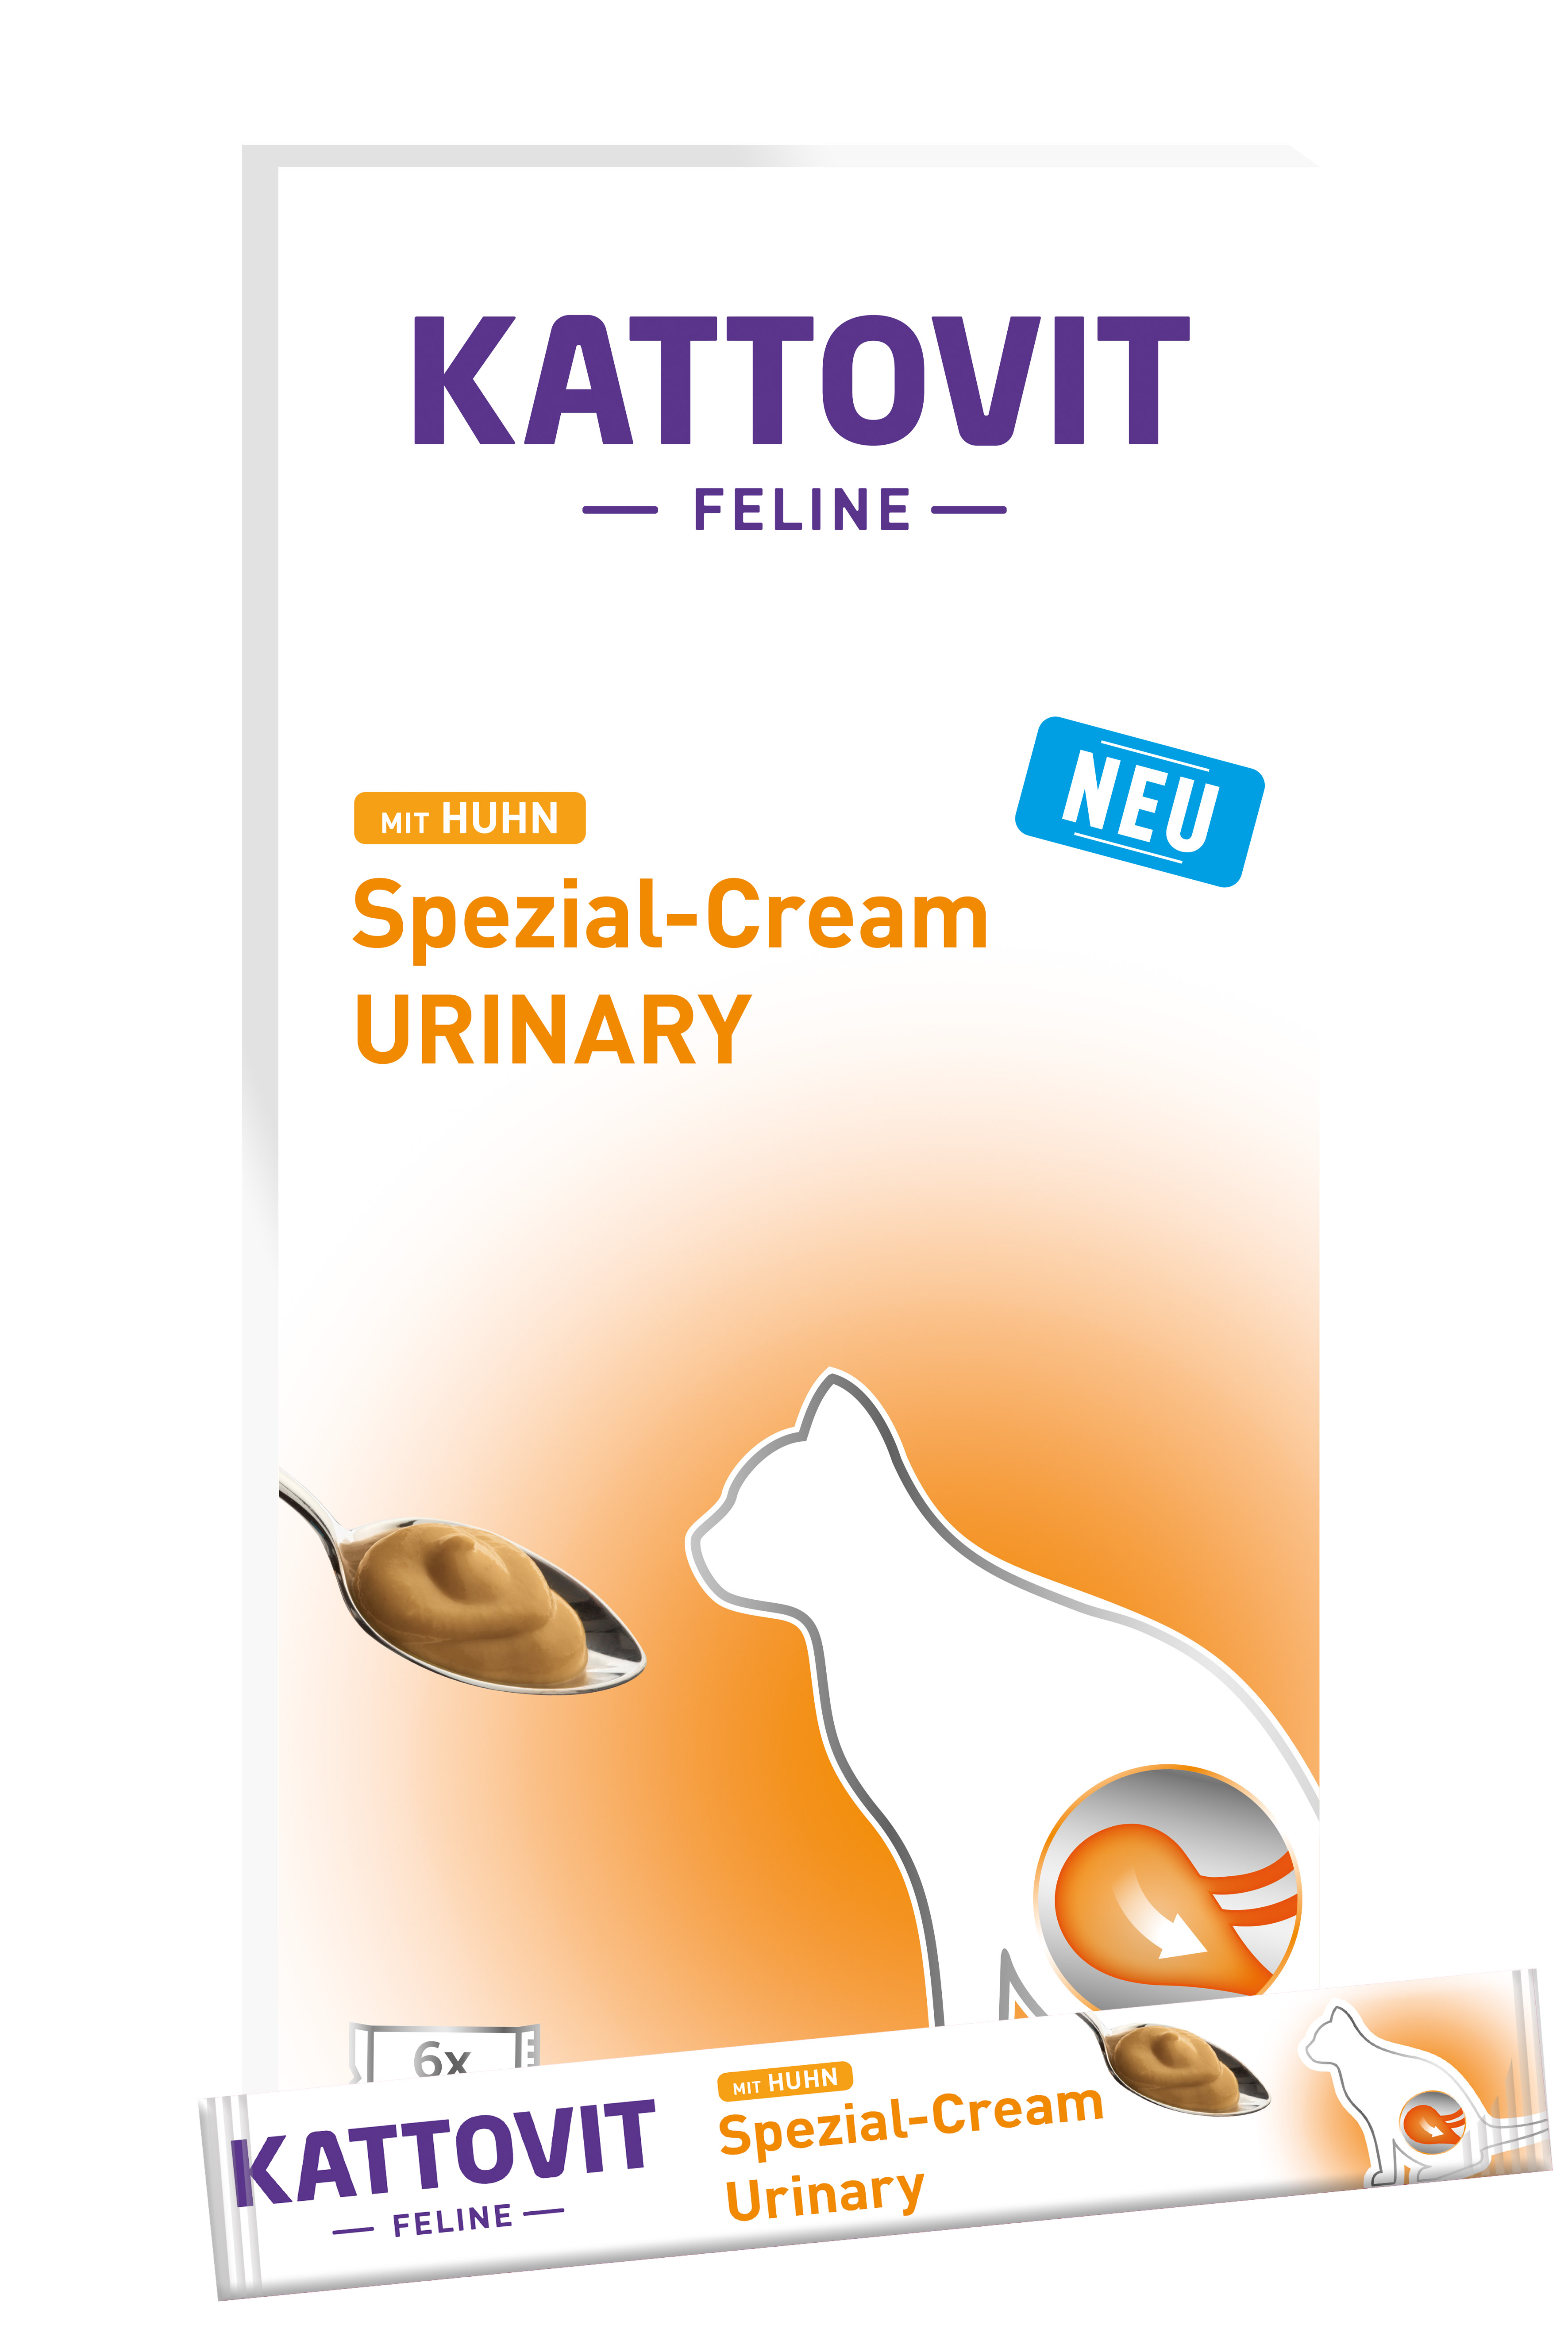 Kattovit URINARY mit Huhn Spezial-Cream 6x15g